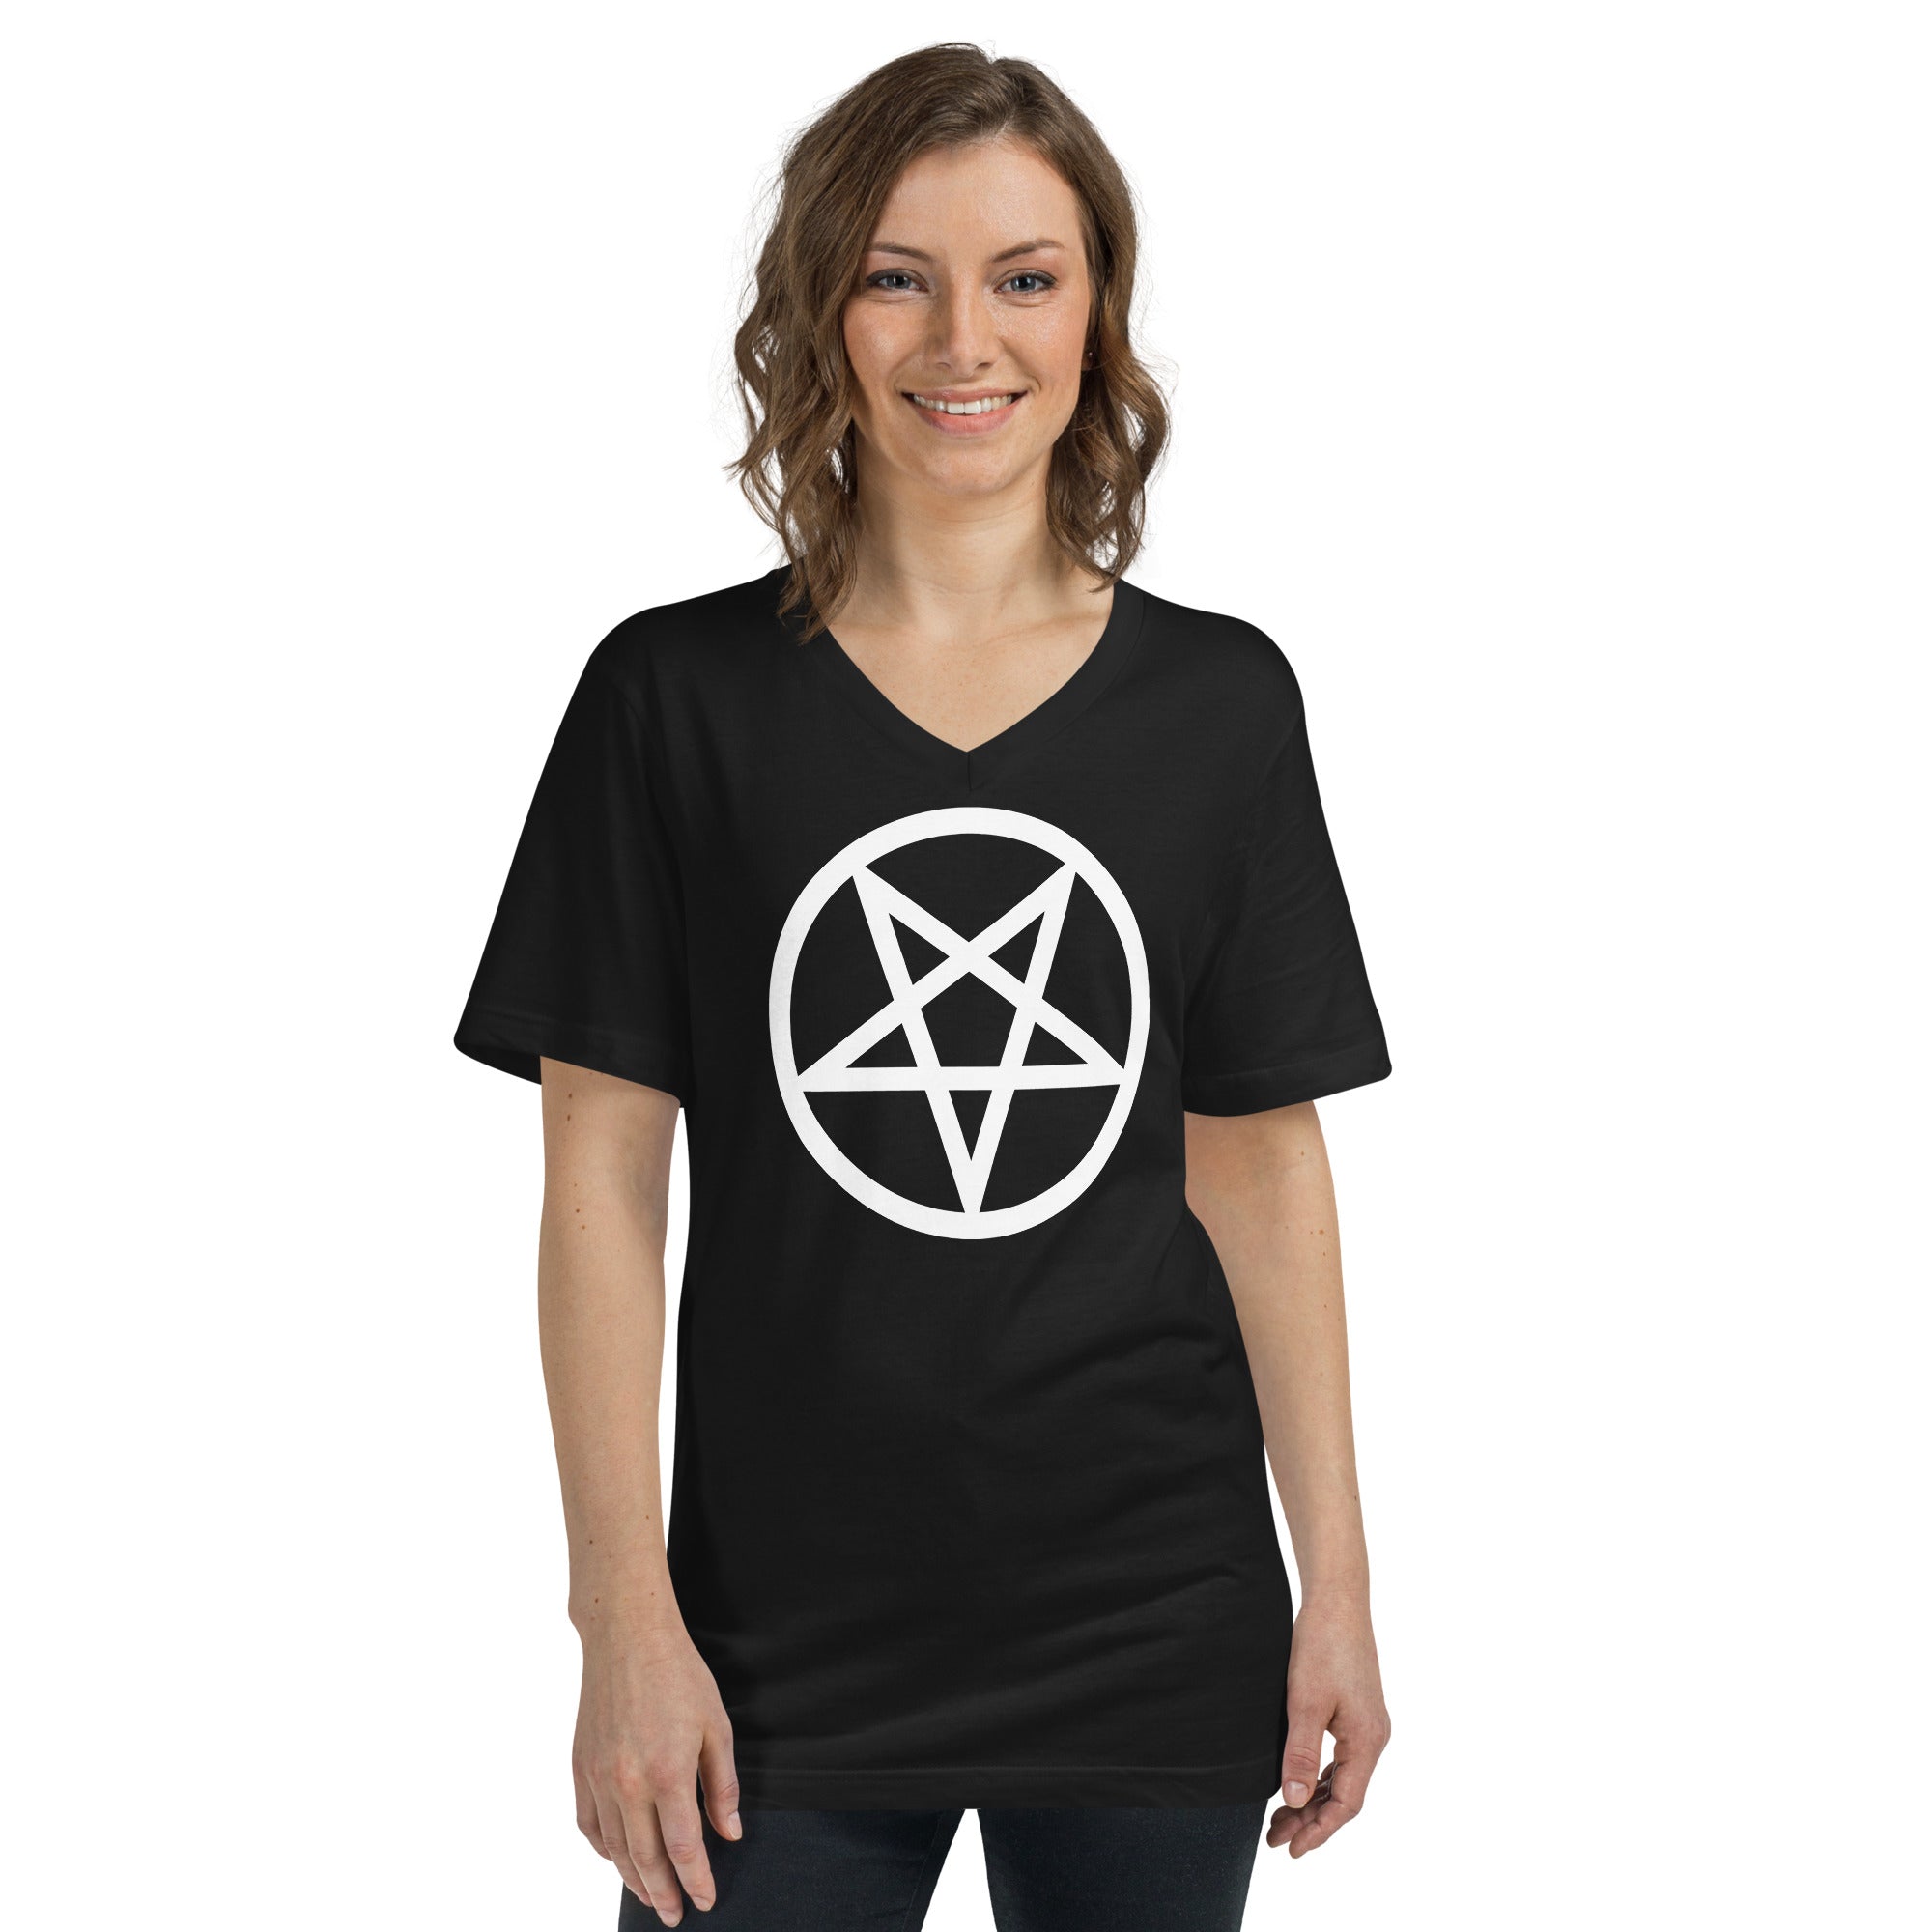 White Classic Inverted Pentagram Occult Symbol Women’s Short Sleeve V-Neck T-Shirt